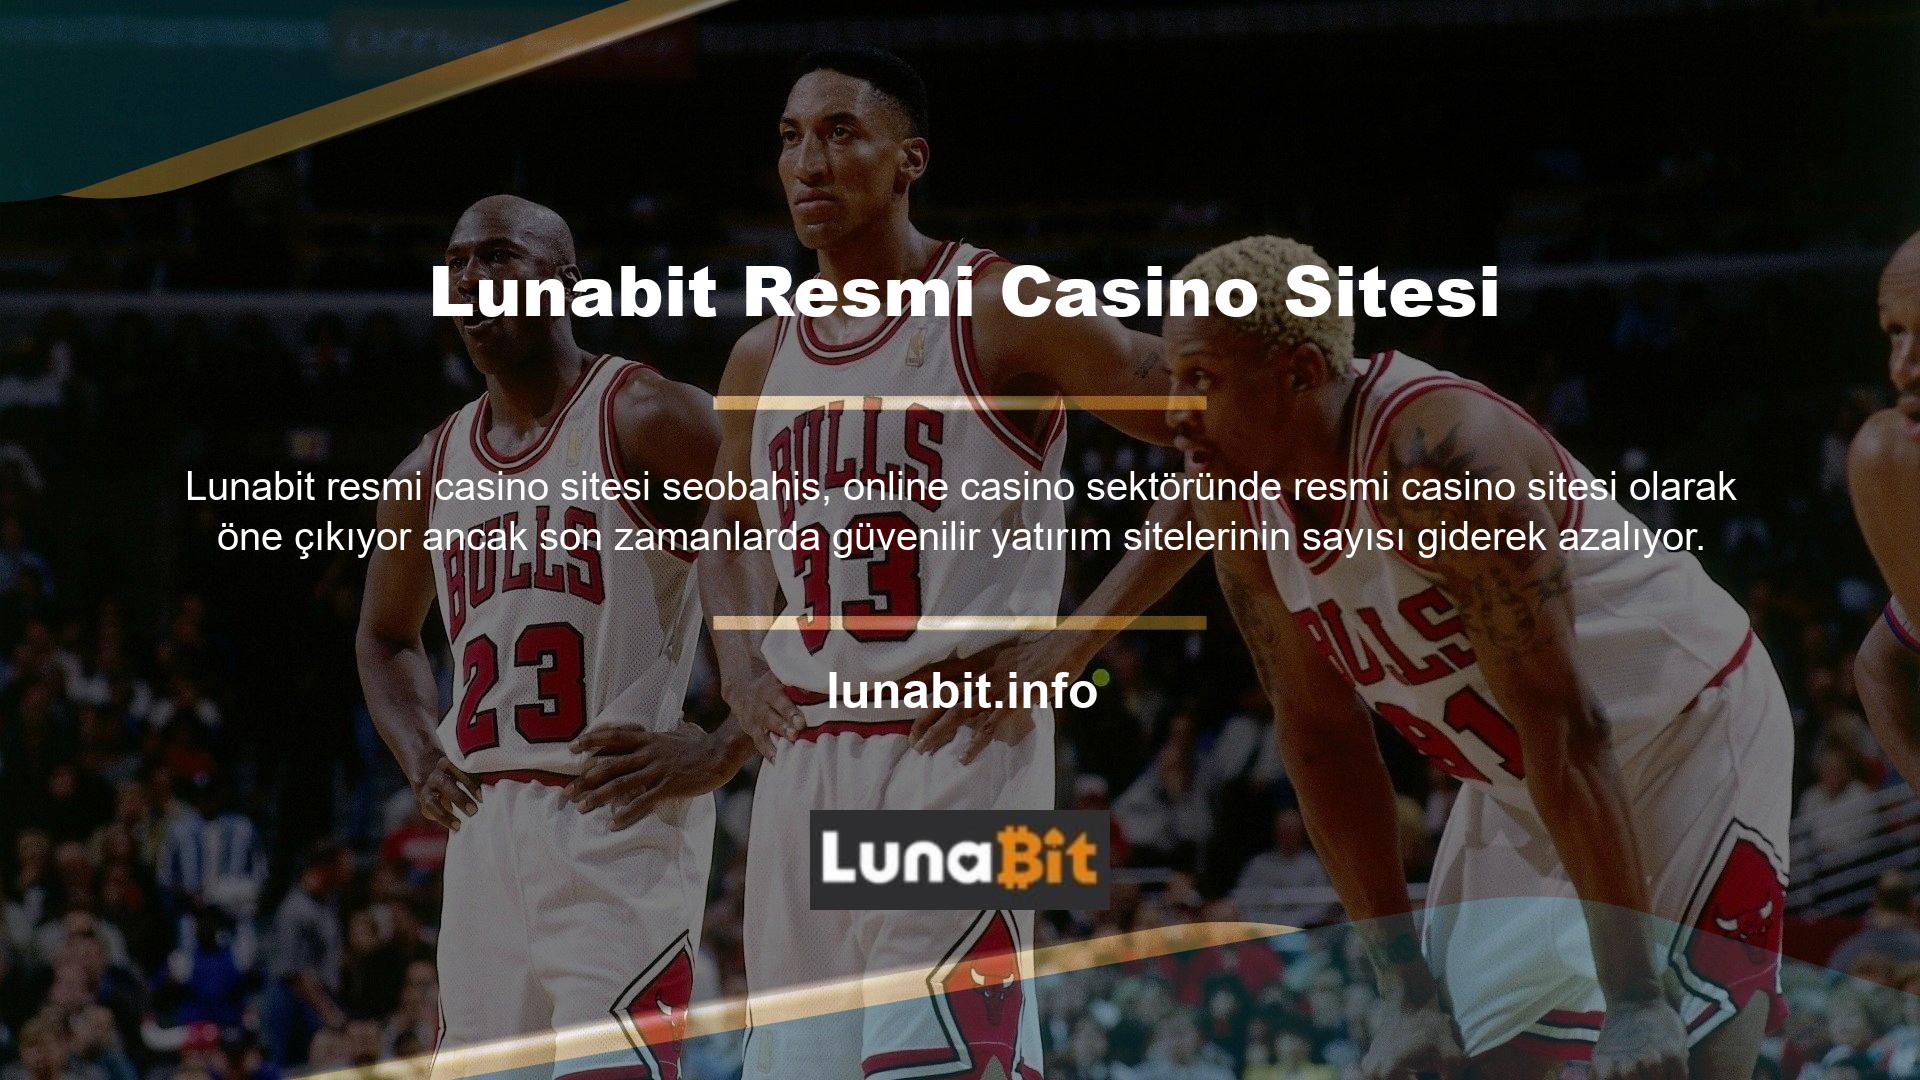 Kullanıcıların gözdesi olan Lunabit, kalitesiyle sektörün en güvenilir sitelerinden biri ve dış kaynak hizmeti veren bir firmadır